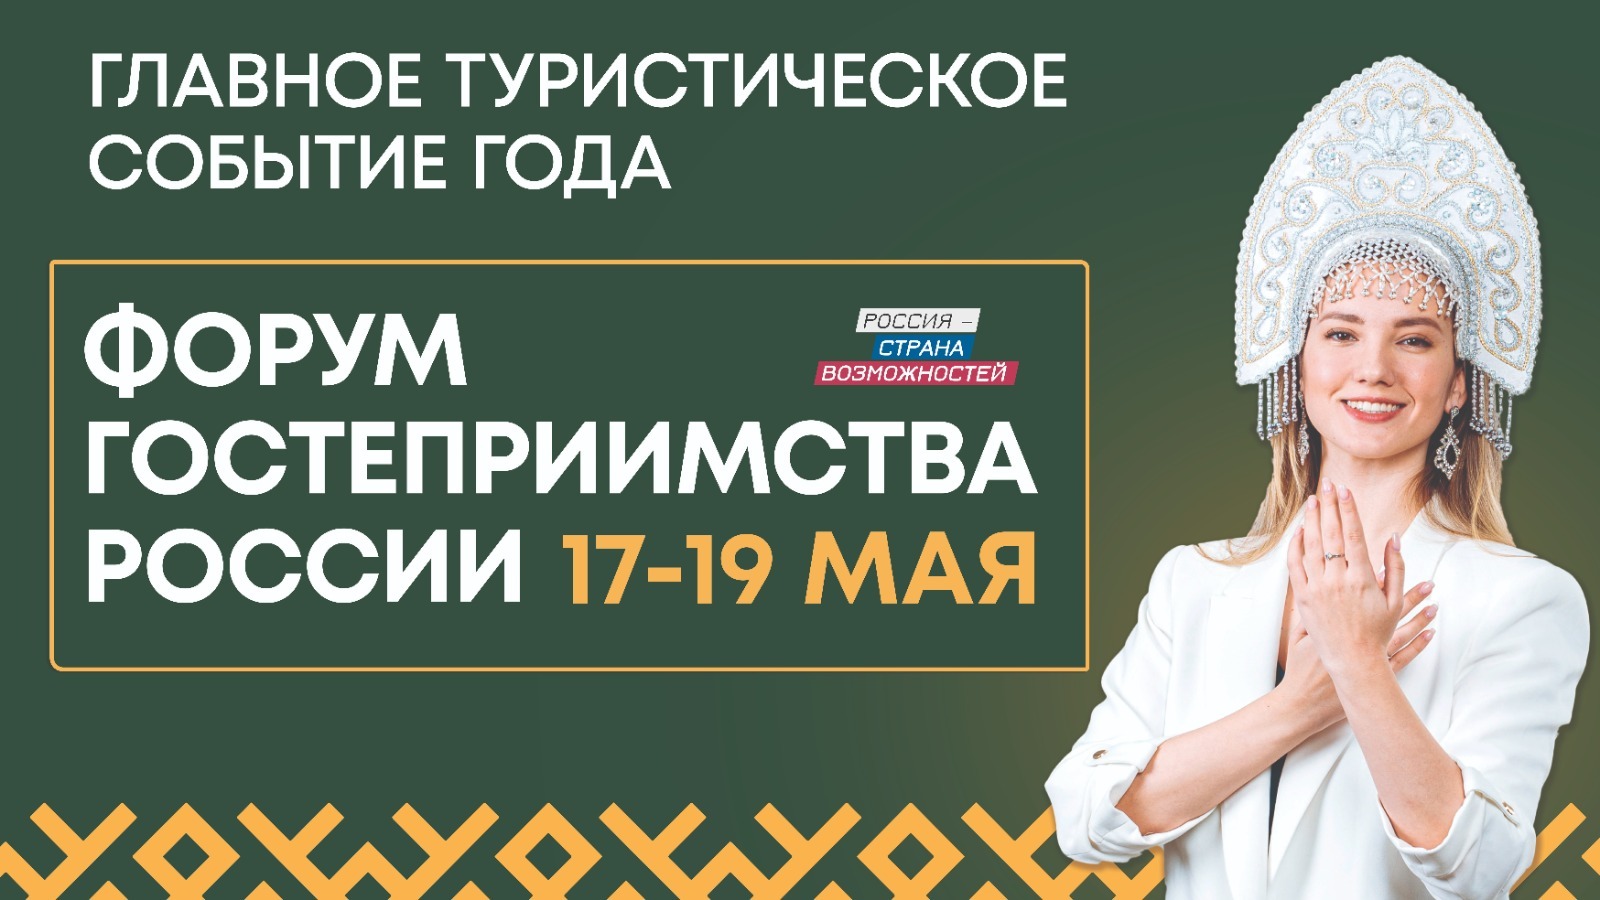 Жителей России приглашают на первый Форум гостеприимства 